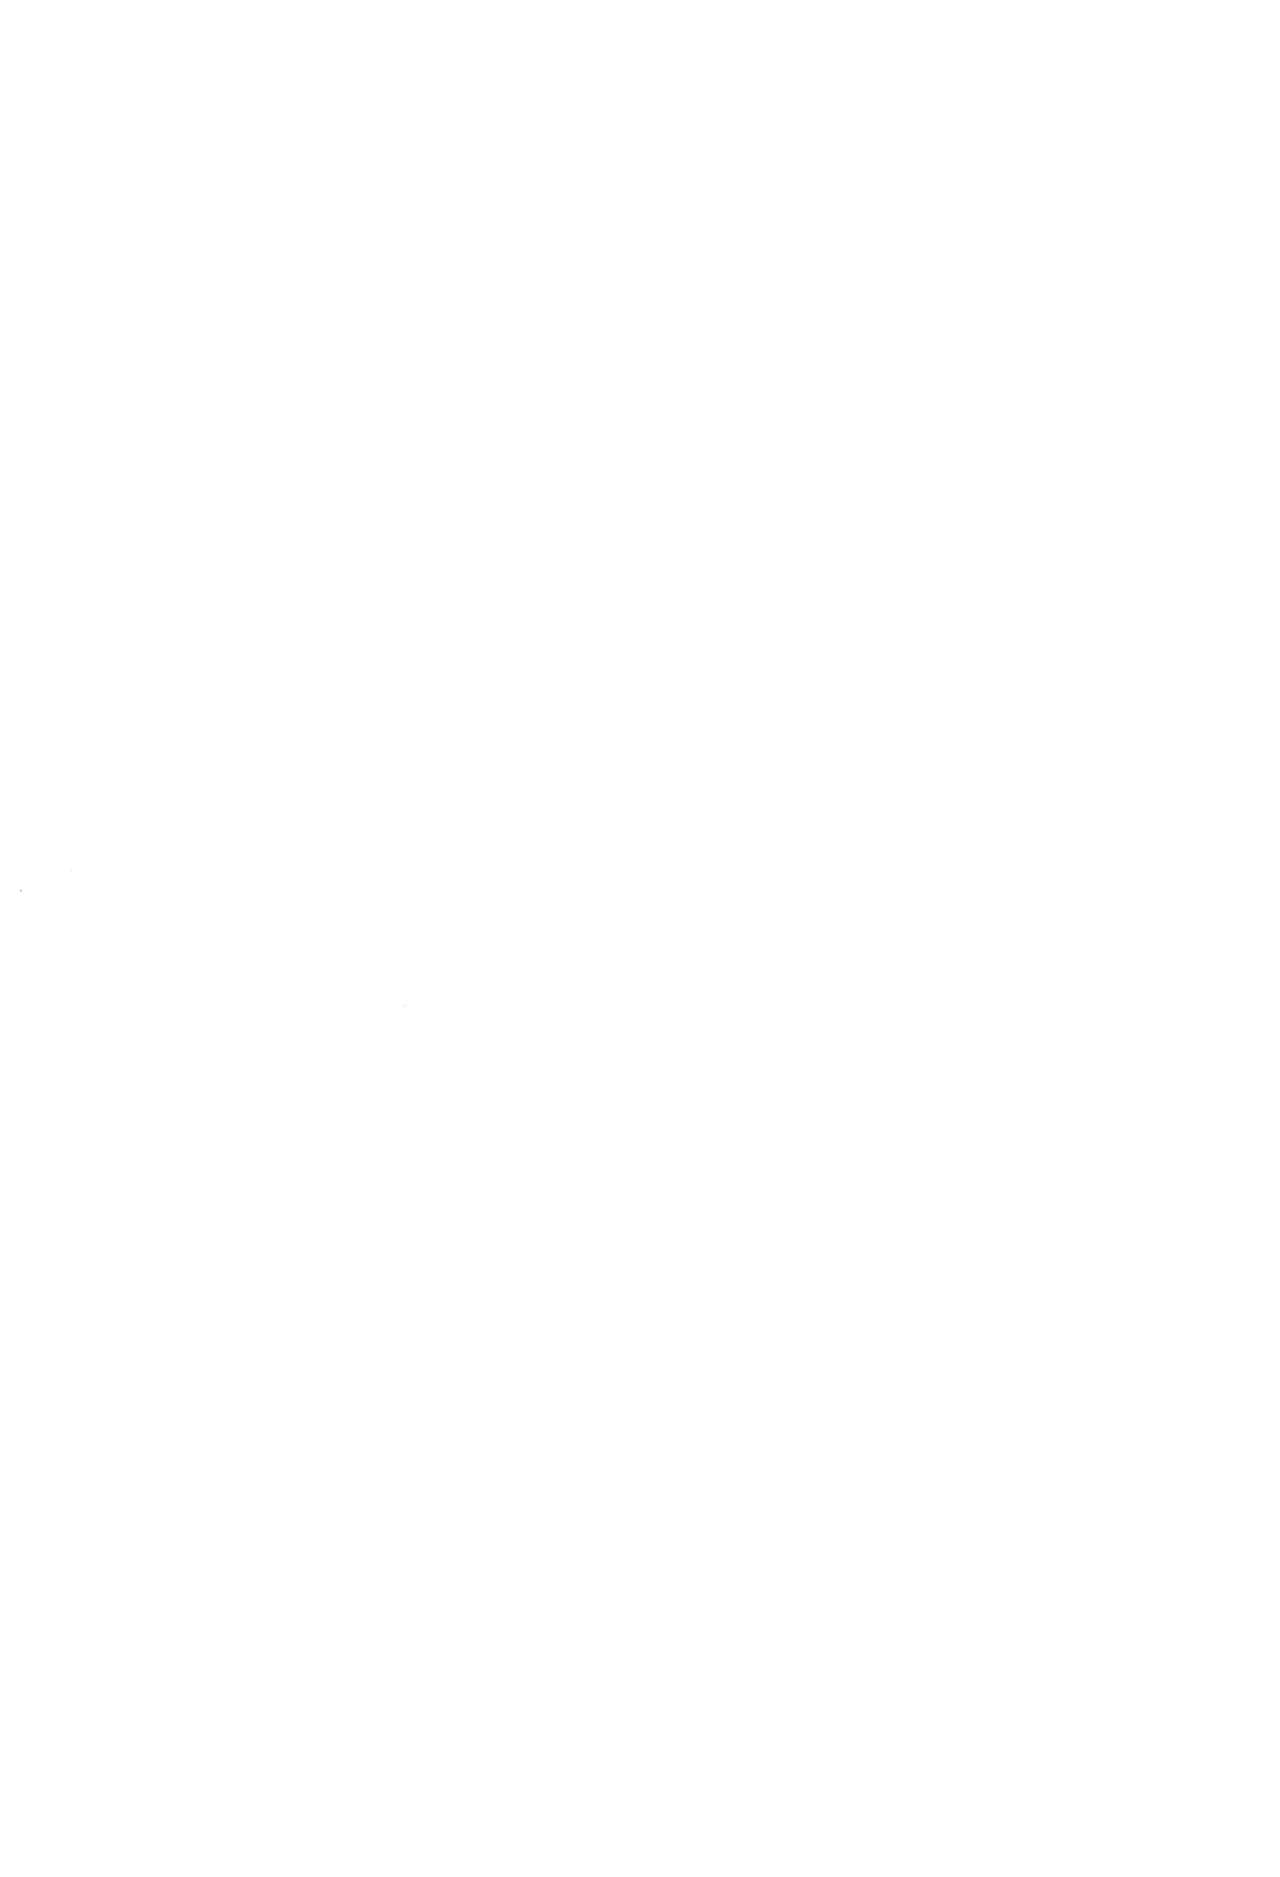 (コミティア124) [九十九里ニャ獣会 (不良品)] 小◯生ビッチは最高だぜ! 椎名音夢ちゃん家の食育事情編